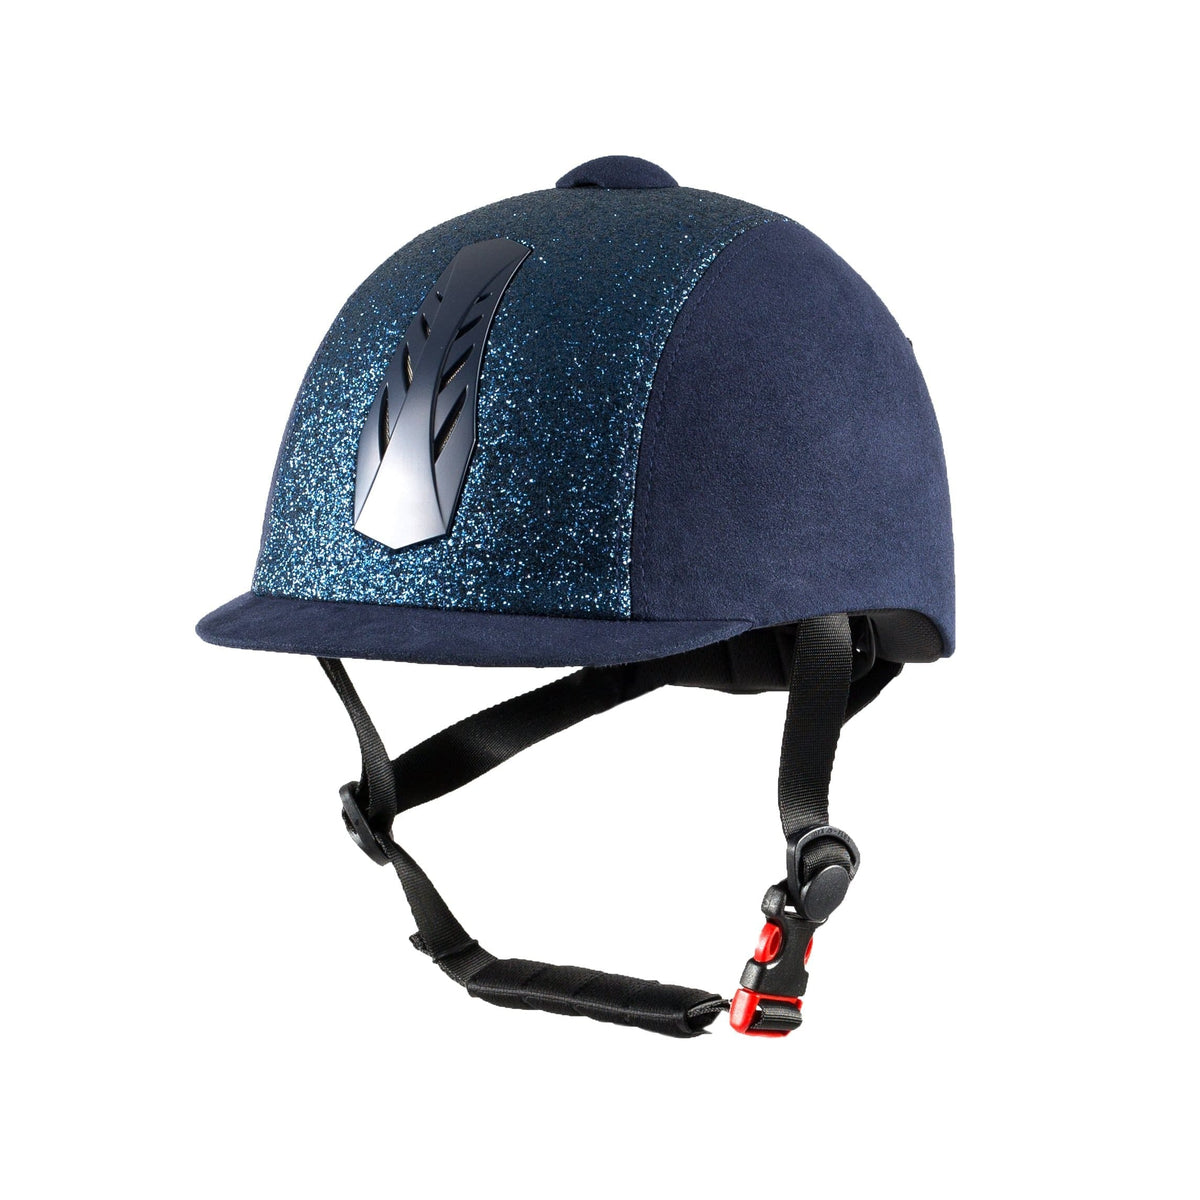 HORZE HELMETS & SAFETY 52-54 / NAVY Horze Triton Galaxy Helmet